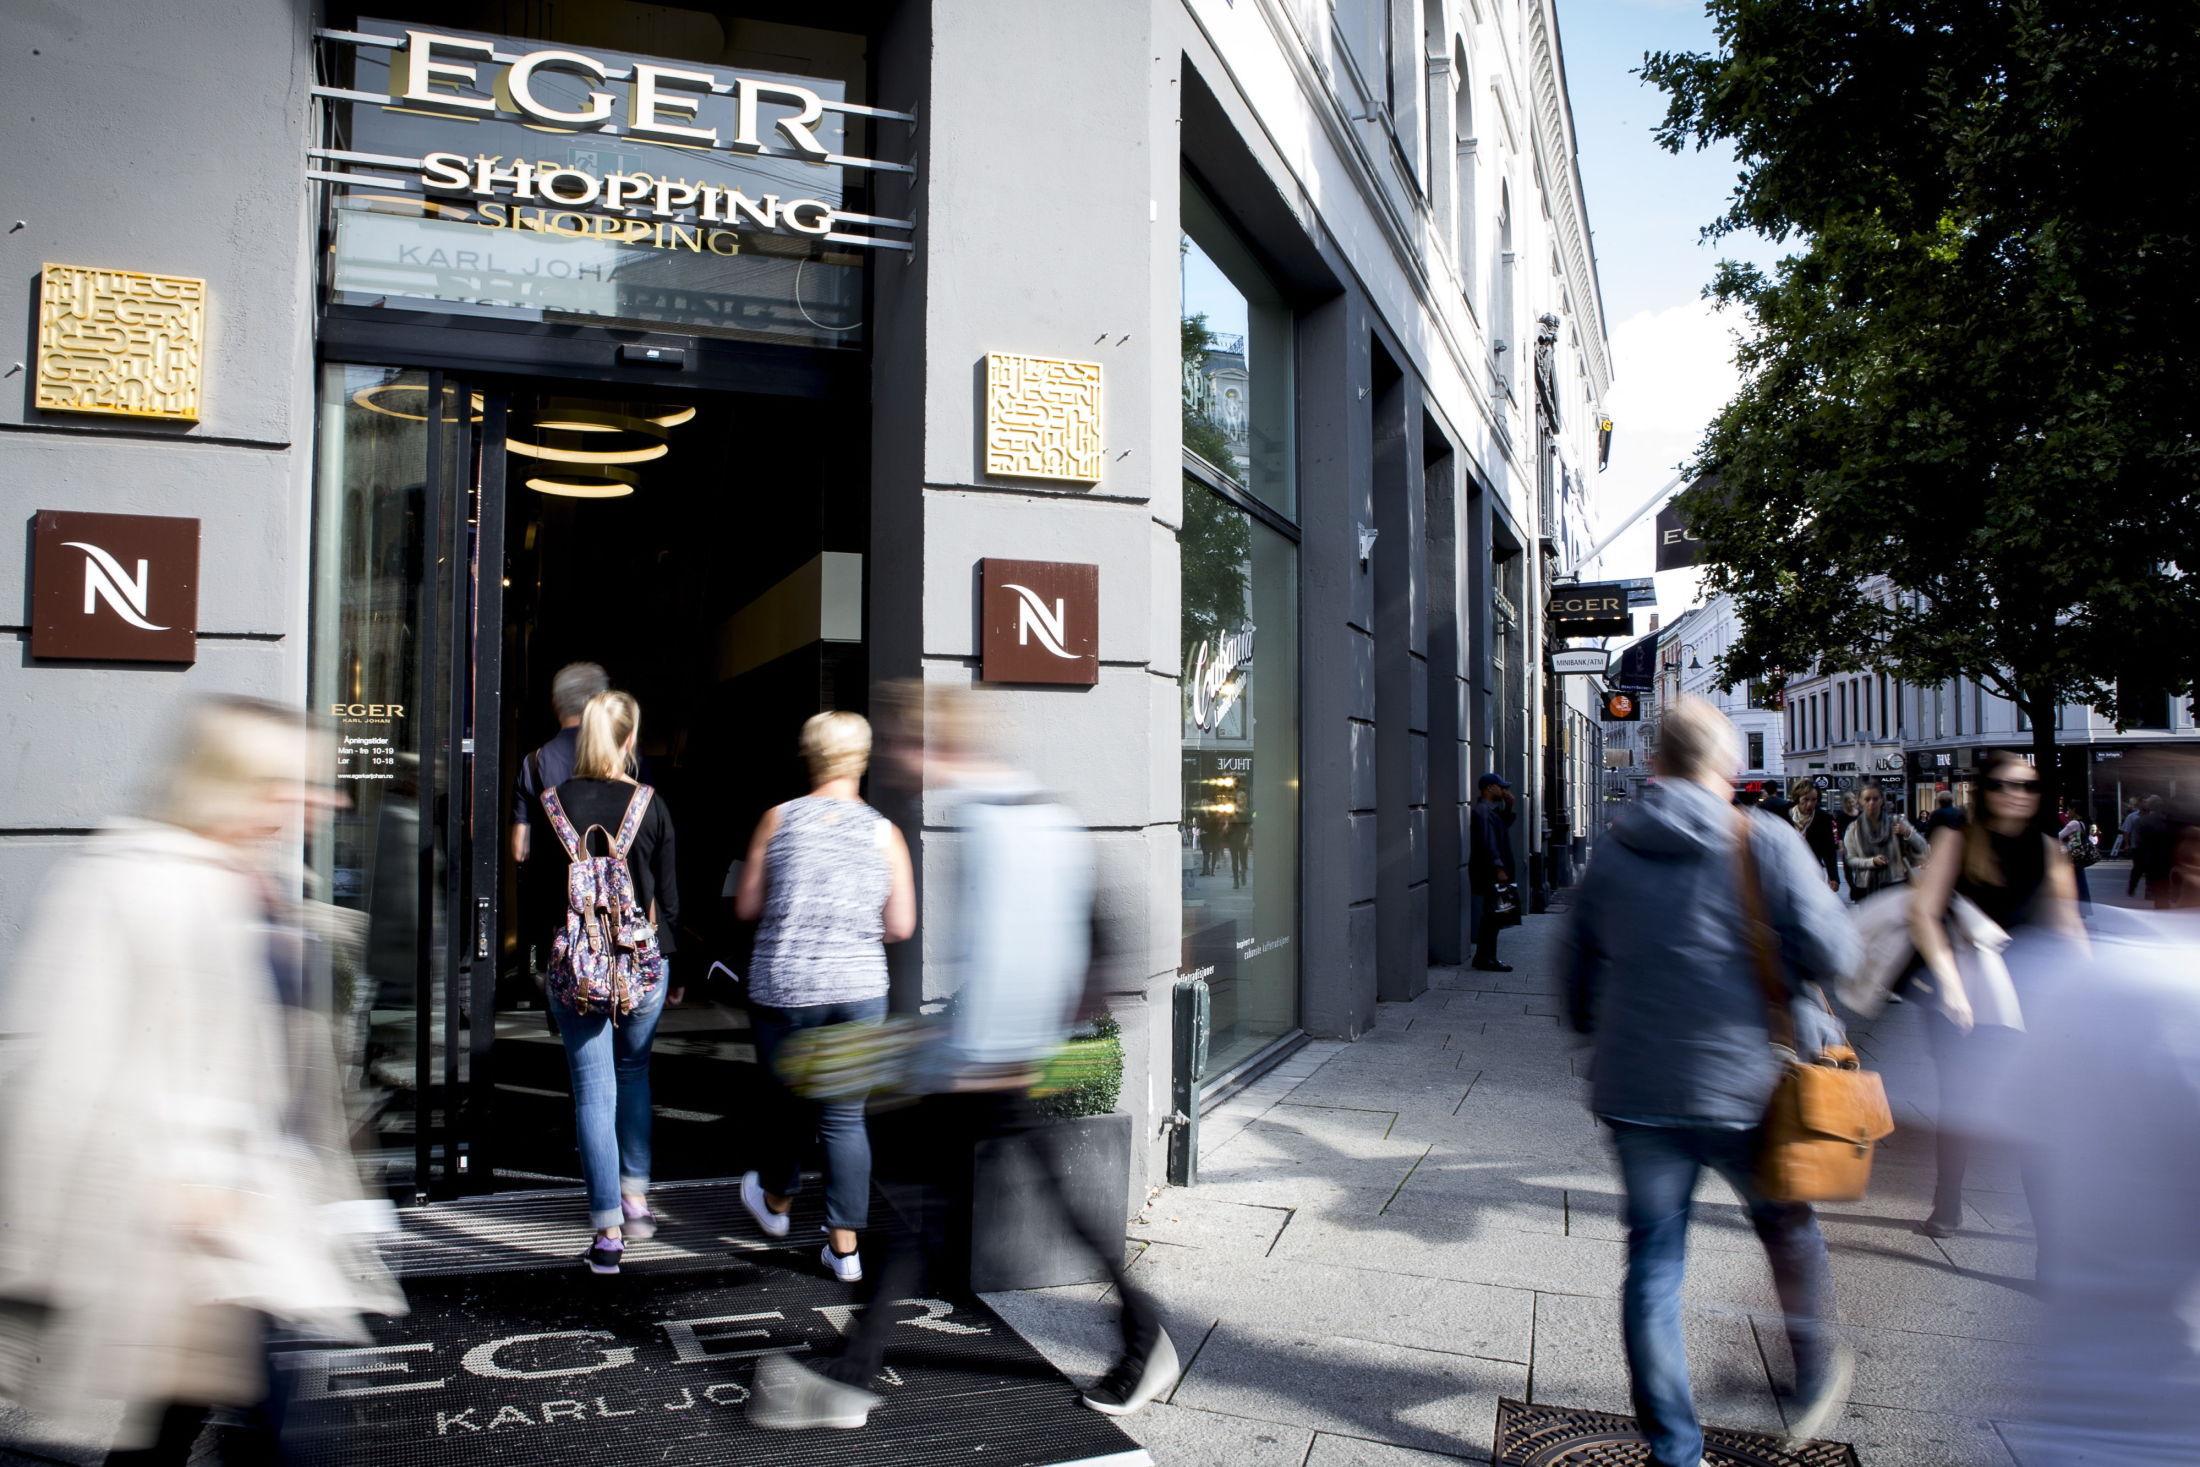 KONGEN PÅ HAUGEN: Shoppingsenteret Eger ligger ikke overraskende på Egertorget i Oslo. Foto: Patrick da Silva Sæther/VG.